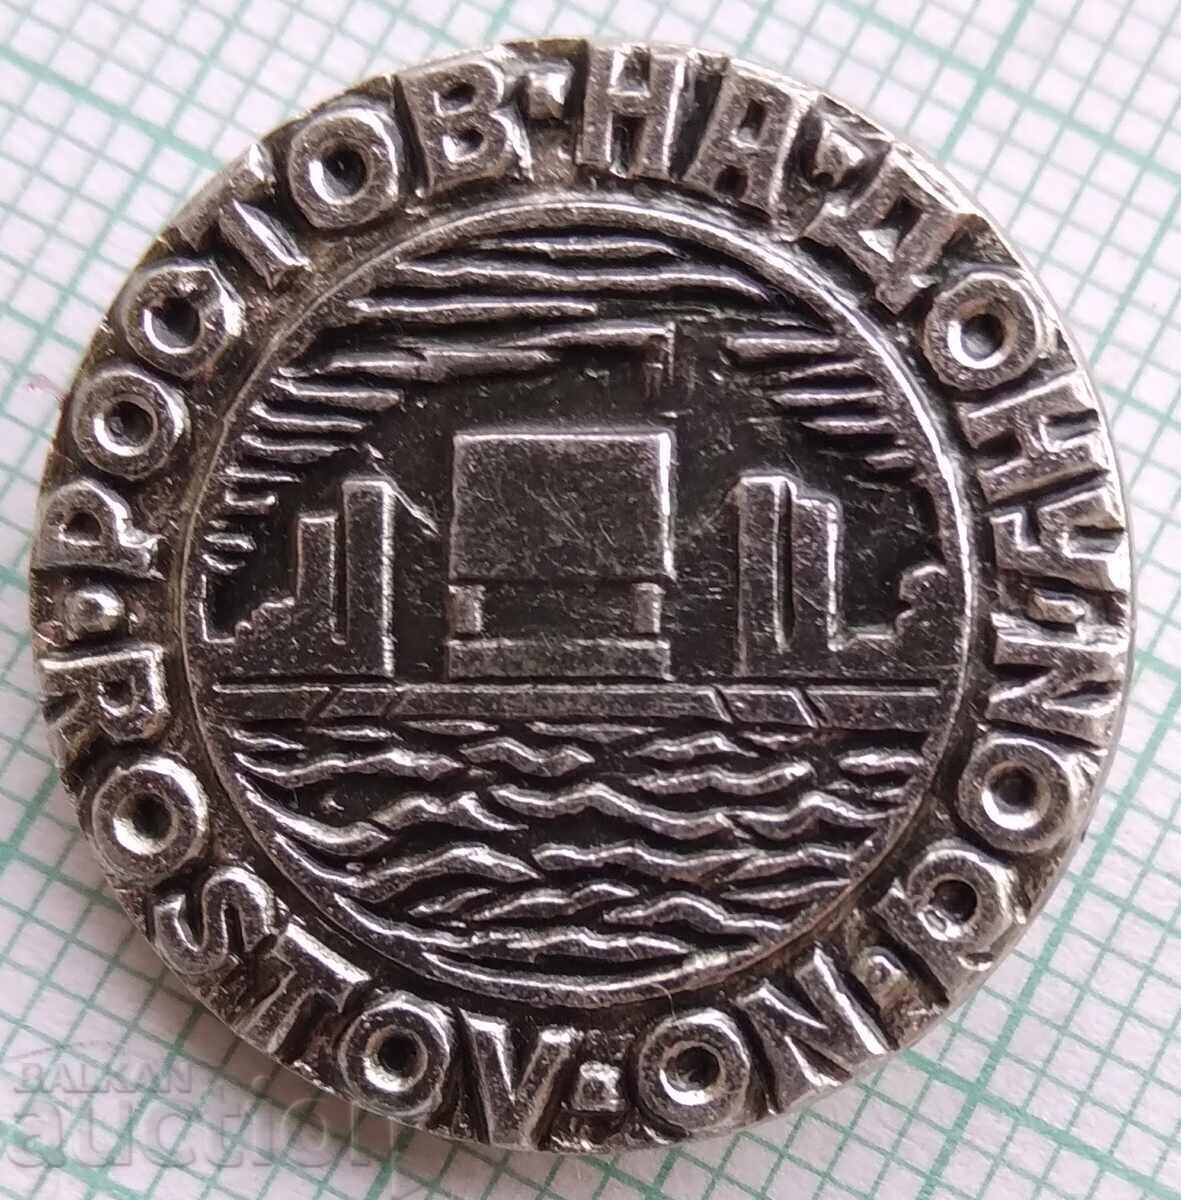 11993 Σήμα - οικόσημο της πόλης του Ροστόφ-ον-Ντον